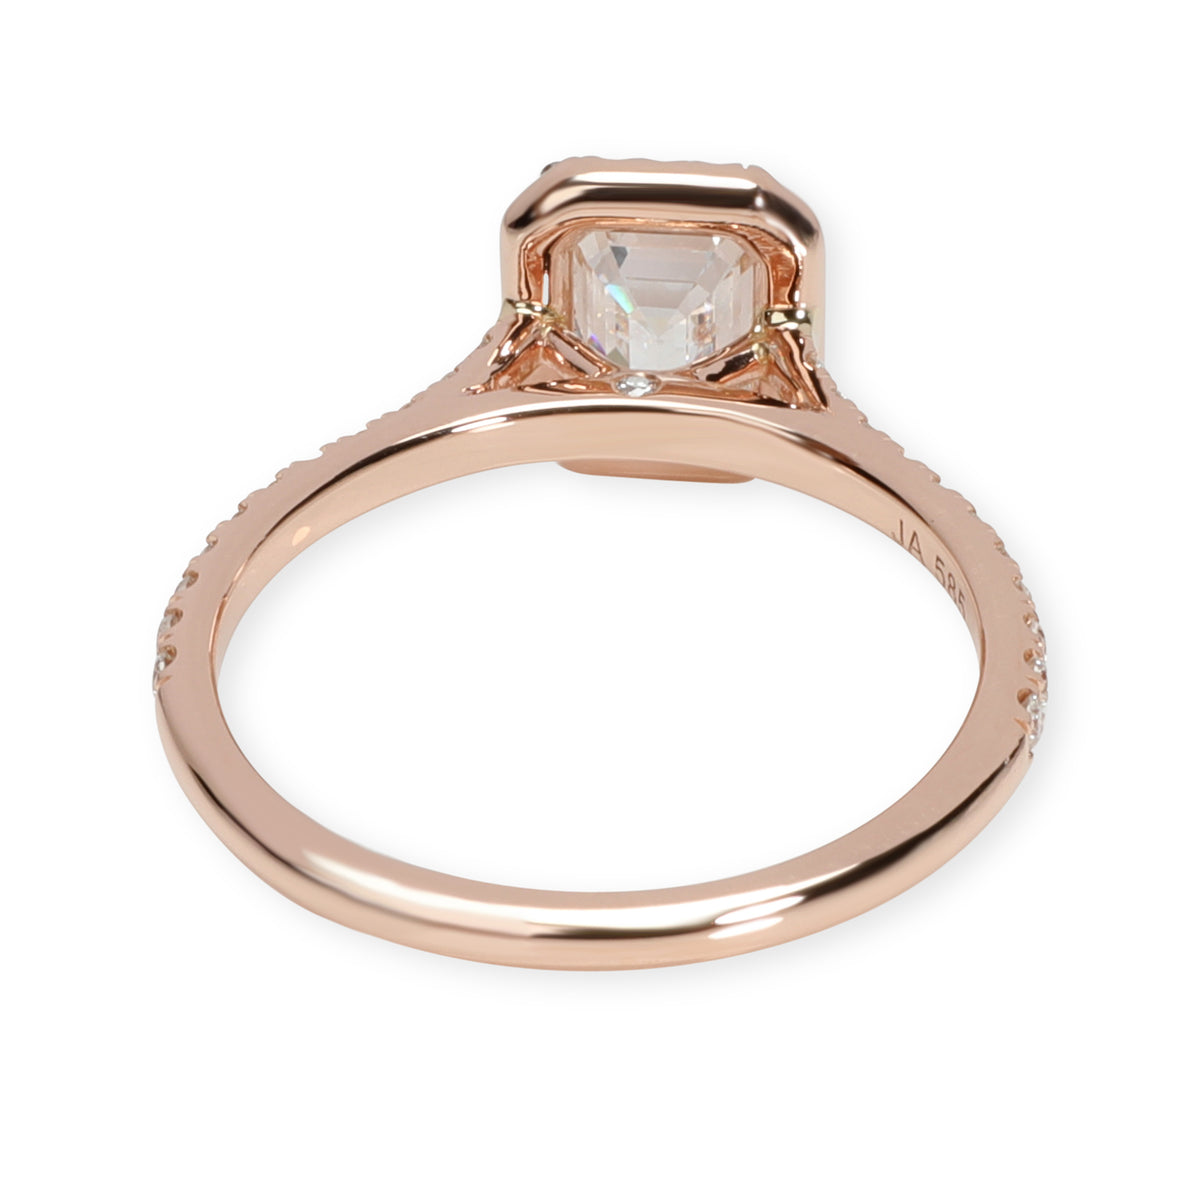 James Allen Emerald Diamond Engagement Ring in 14K Rose Gold GIA E VVS2 1.44 CTW